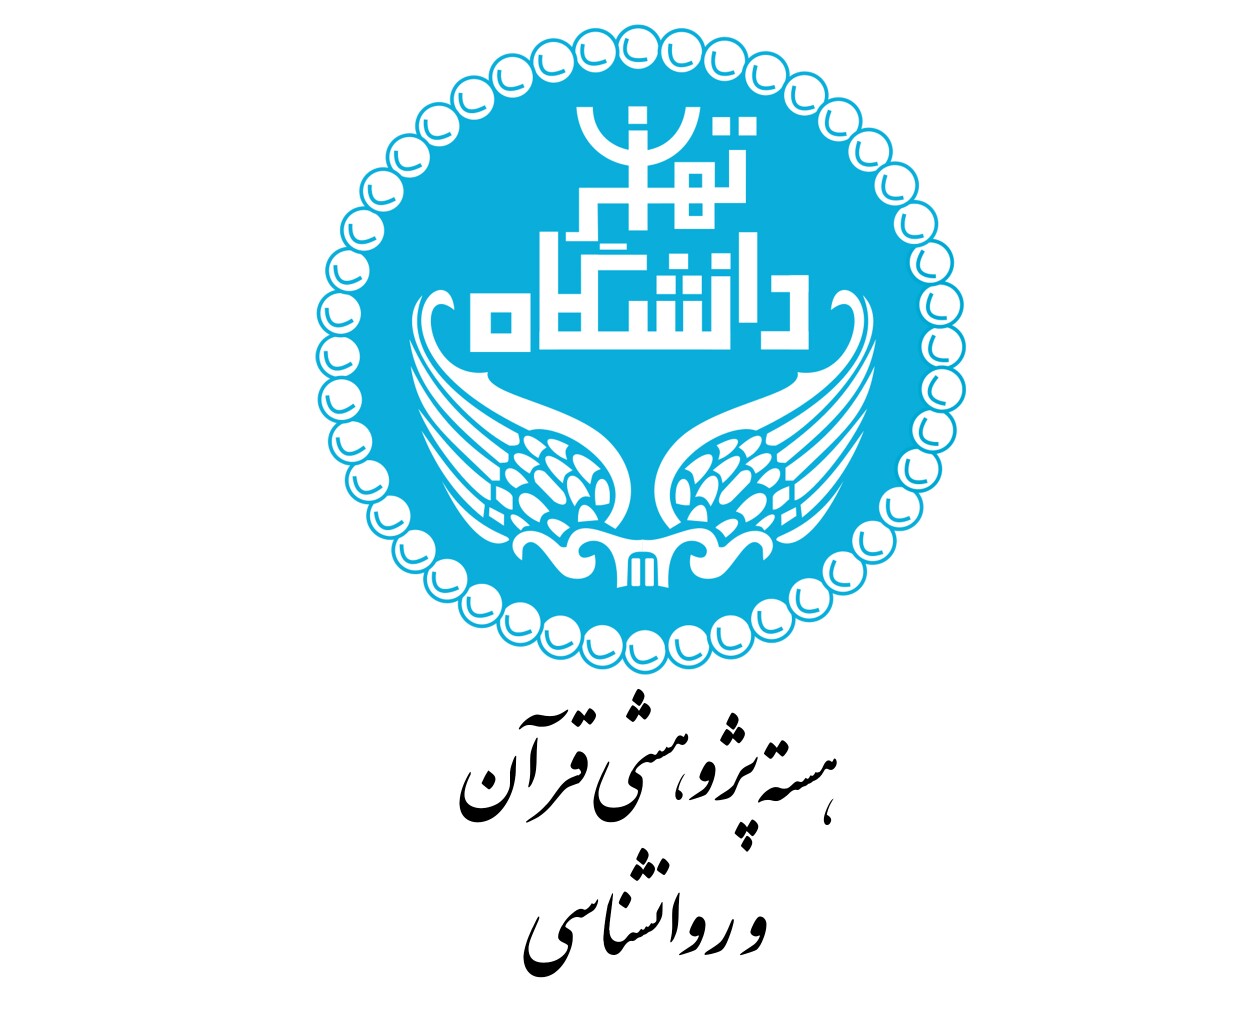 هسته پژوهشی قرآن و روانشناسی دانشکده روانشناسی و علوم تربیتی دانشگاه تهران